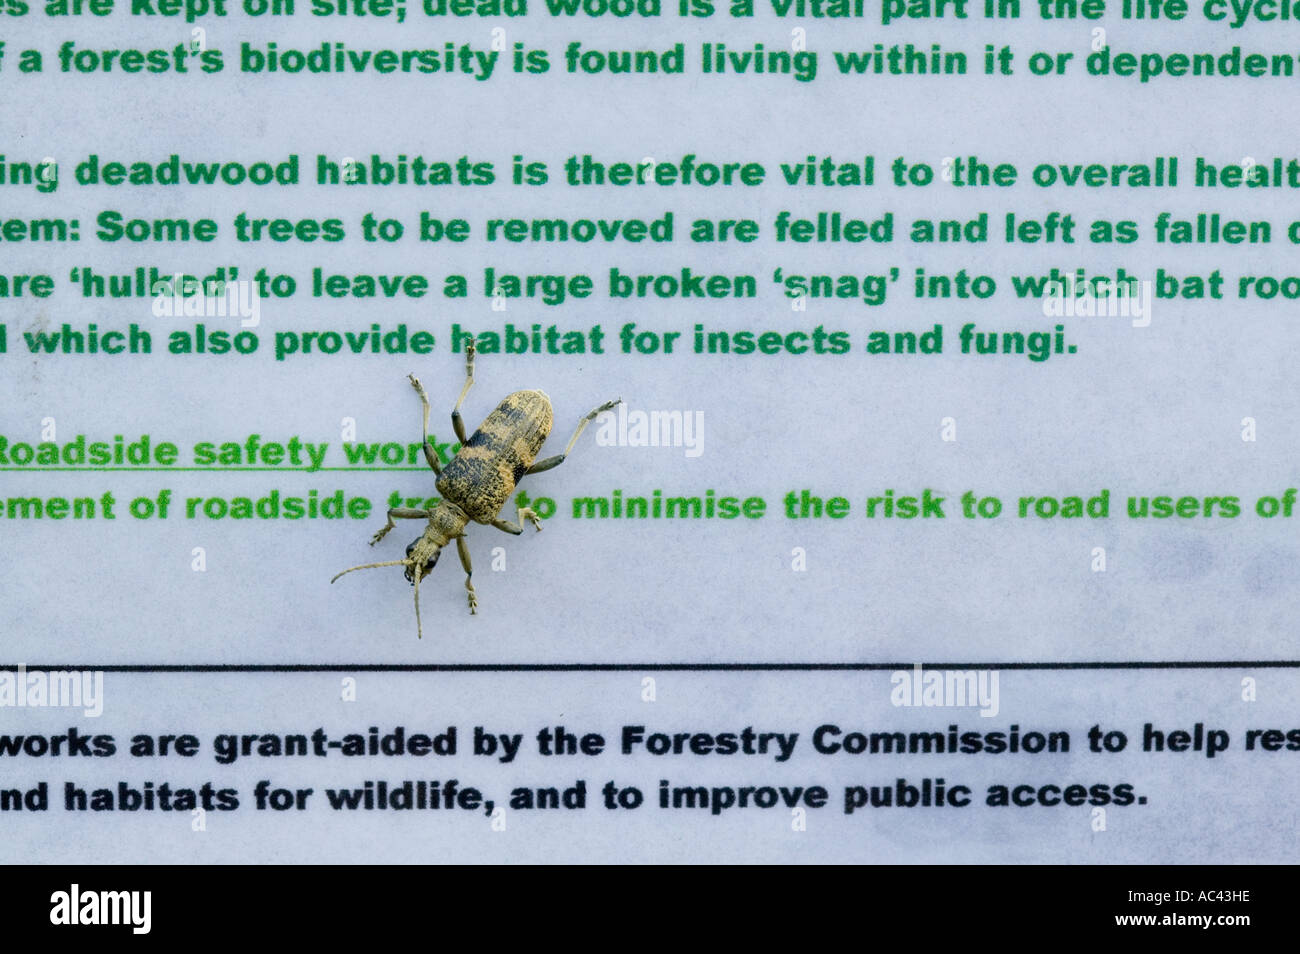 Un scarabée sur un autre signe qui est la promotion de la biodiversité et la gestion des zones boisées pour promouvoir les insectes. Ambleside, Cumbria, Royaume-Uni Banque D'Images